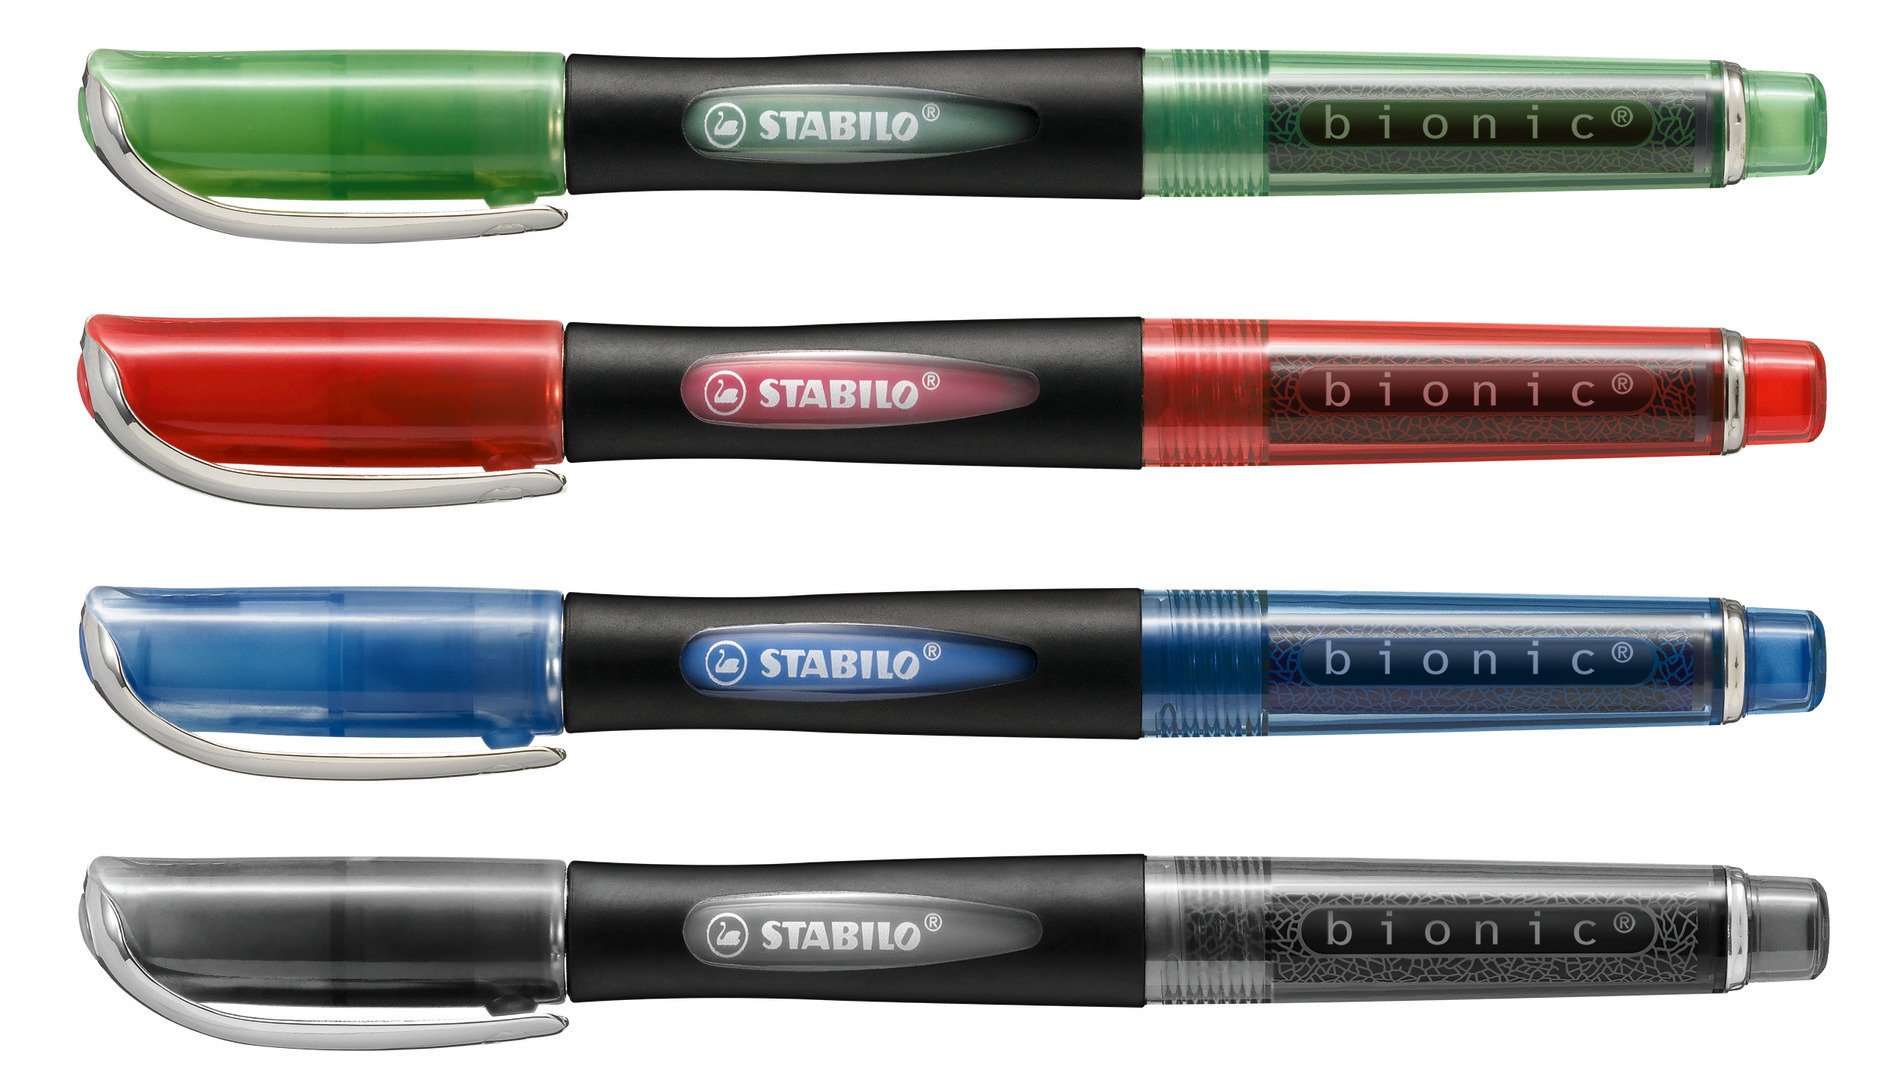 Tintenroller stabilo - Die TOP Produkte unter den verglichenenTintenroller stabilo